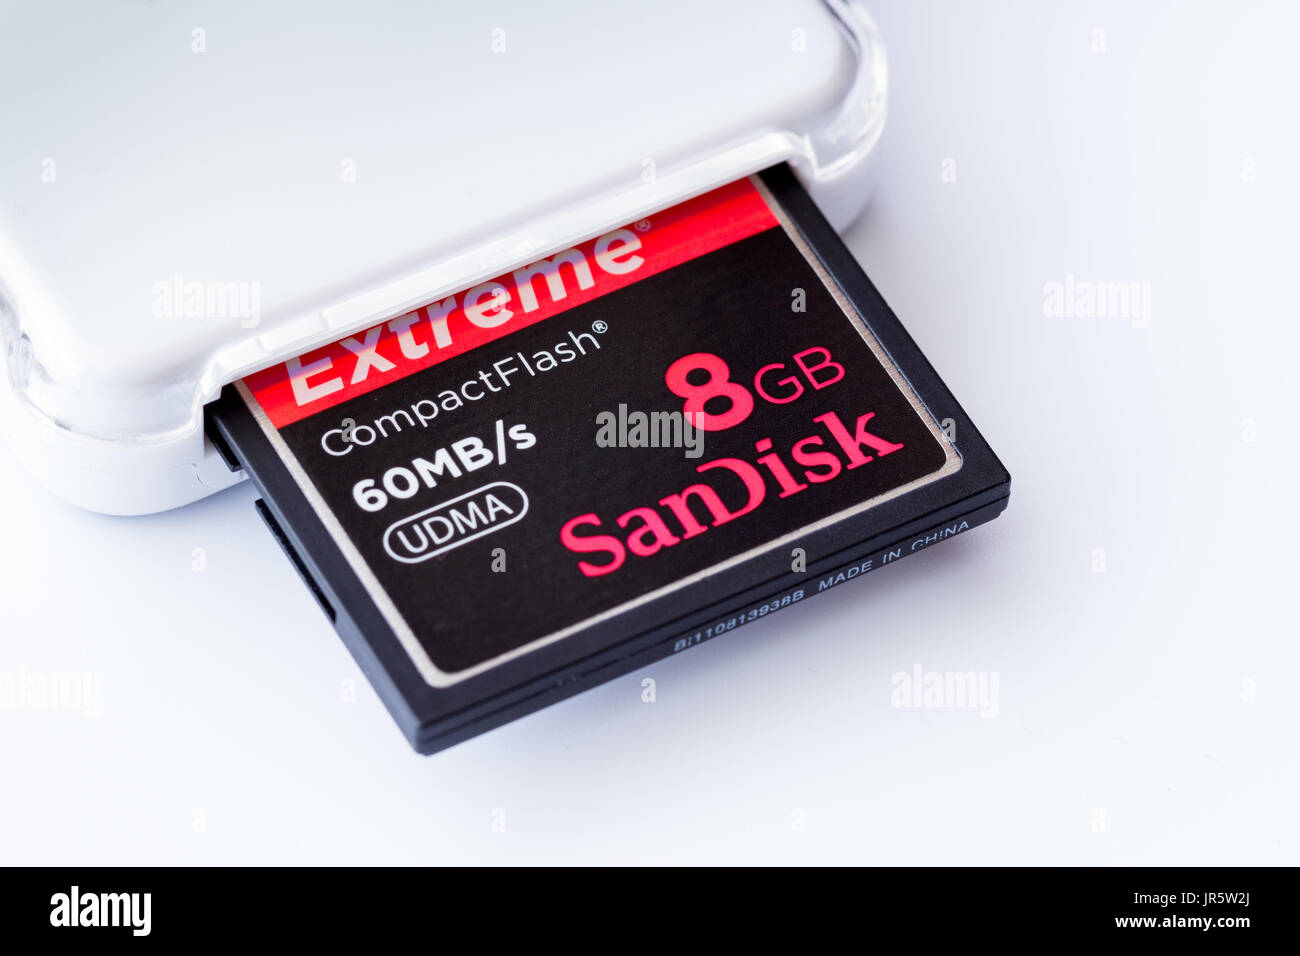 SanDisk Compact Flash 8Go avec lecteur de carte carte mémoire Photo Stock -  Alamy